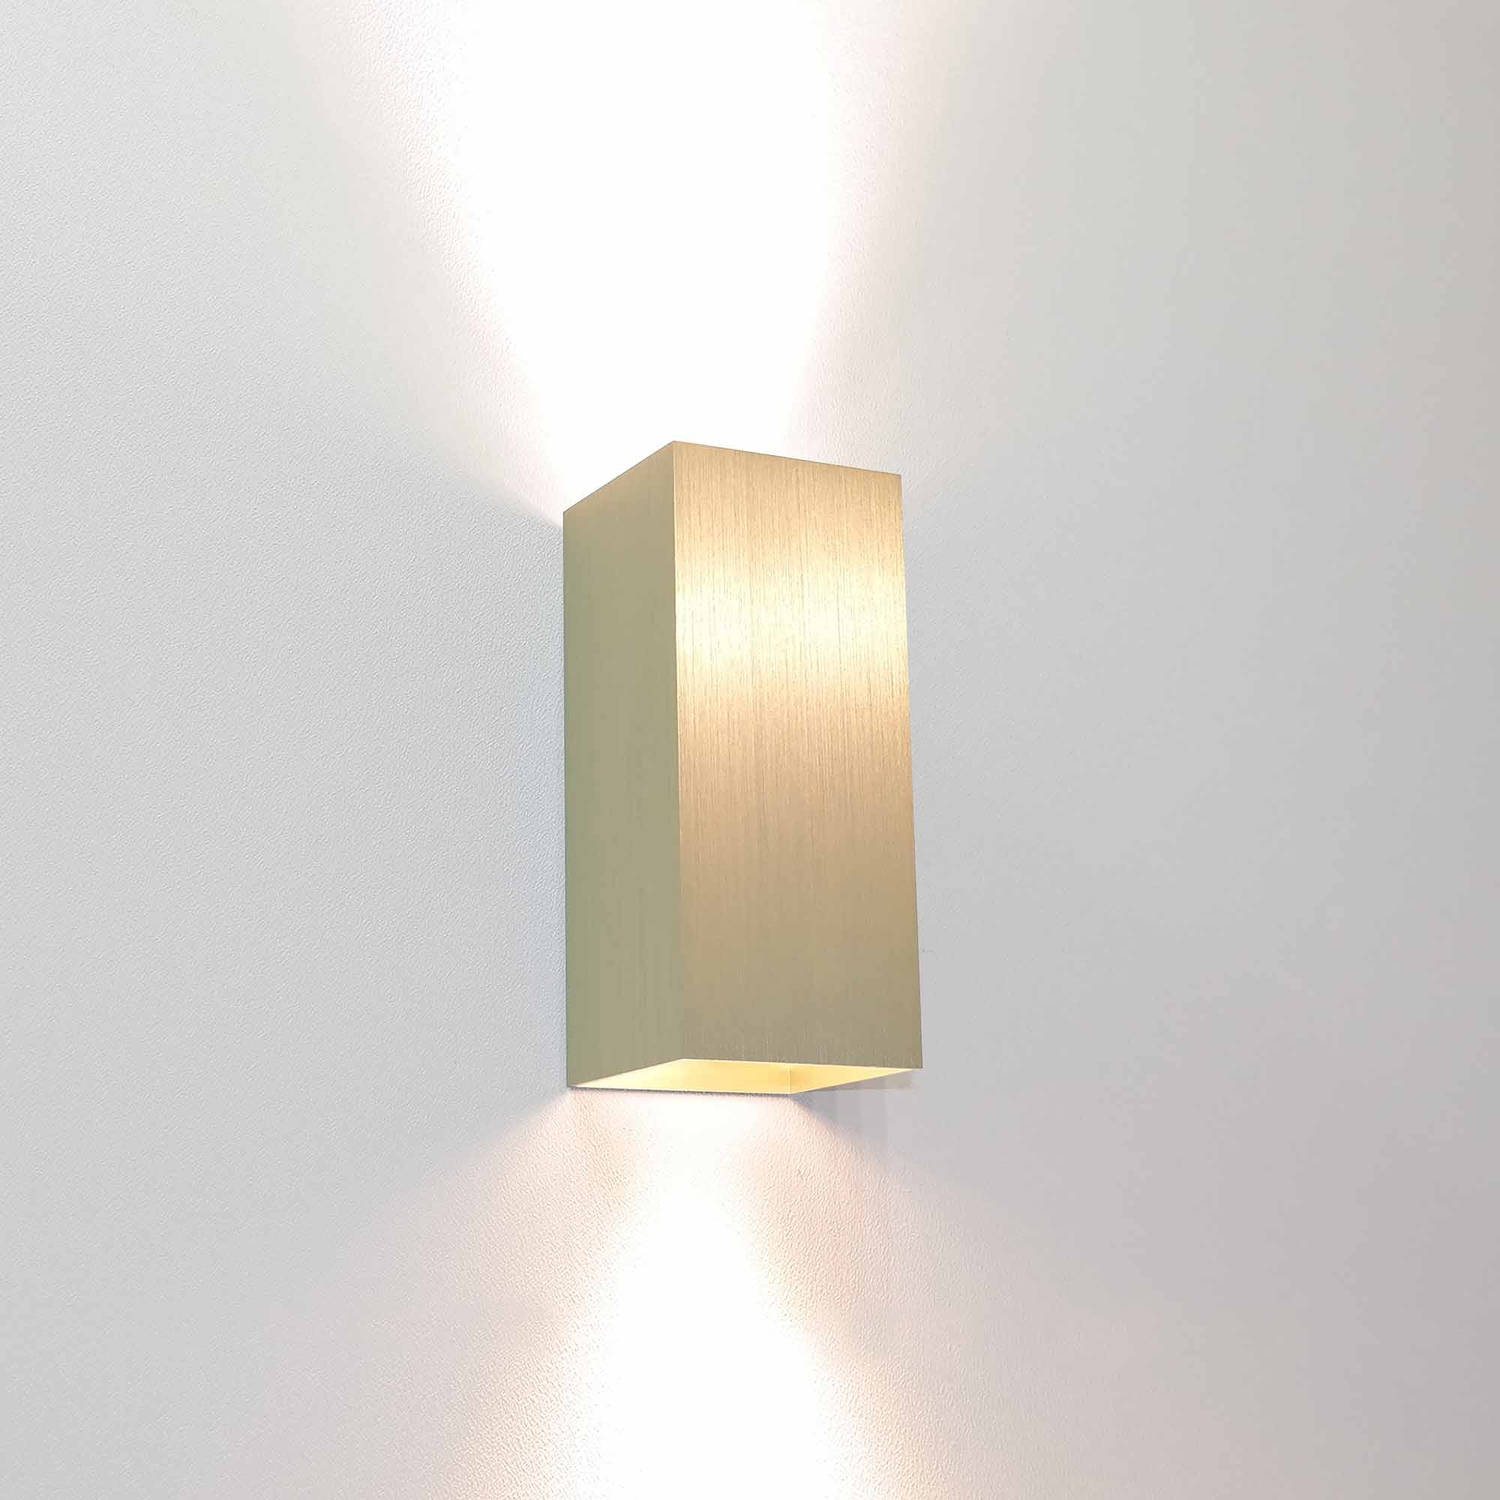 Artdelight Wandlamp Dante 2 lichts 15,5 x 6,5 cm mat goud